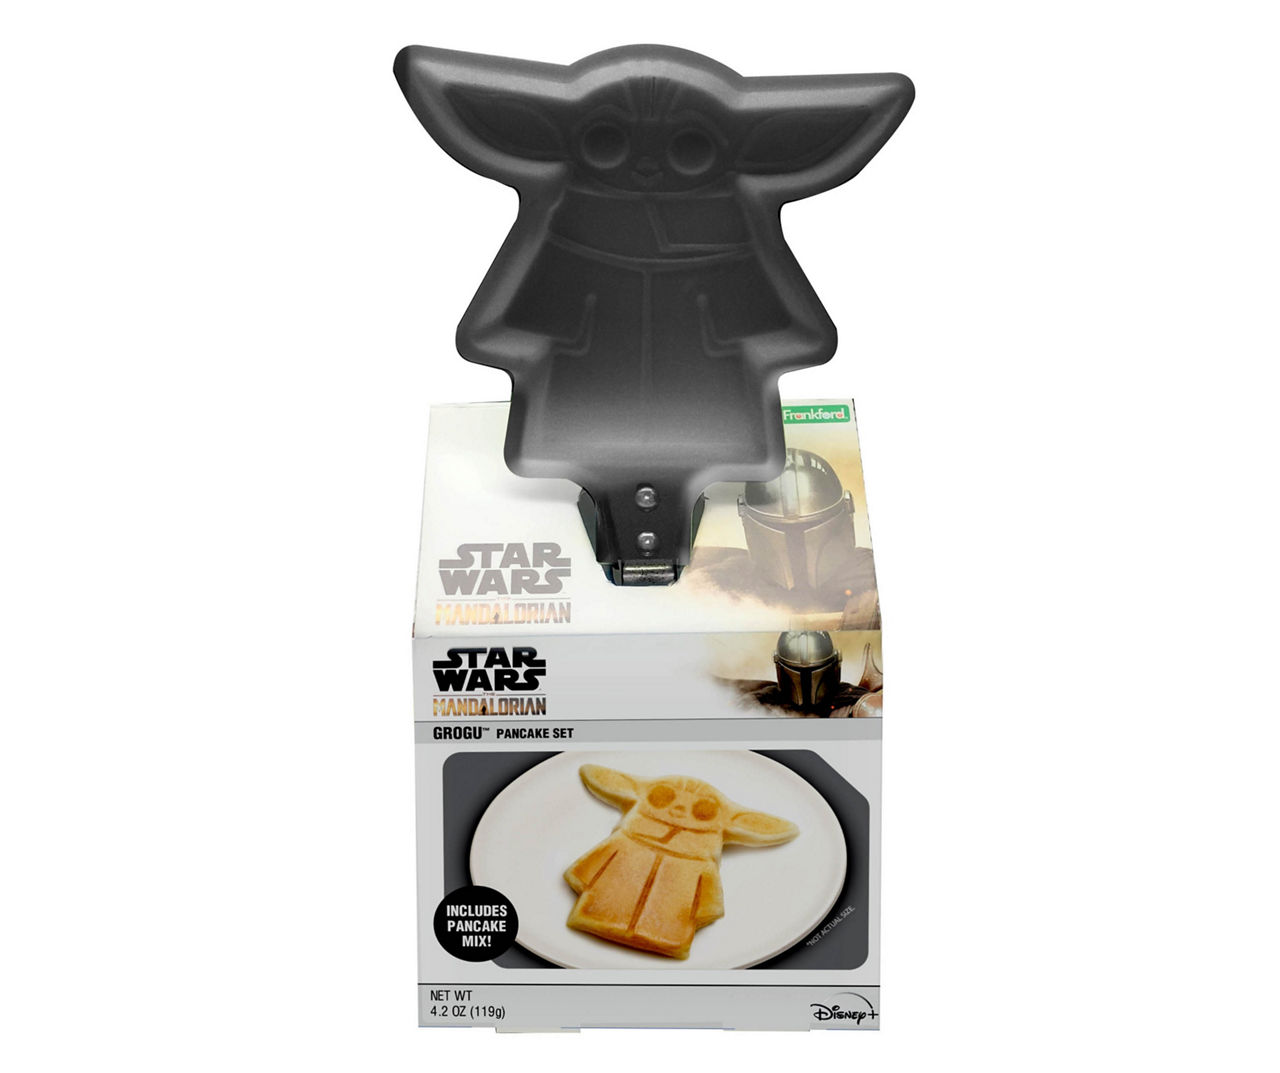 Star Wars Pancake Skillet Set